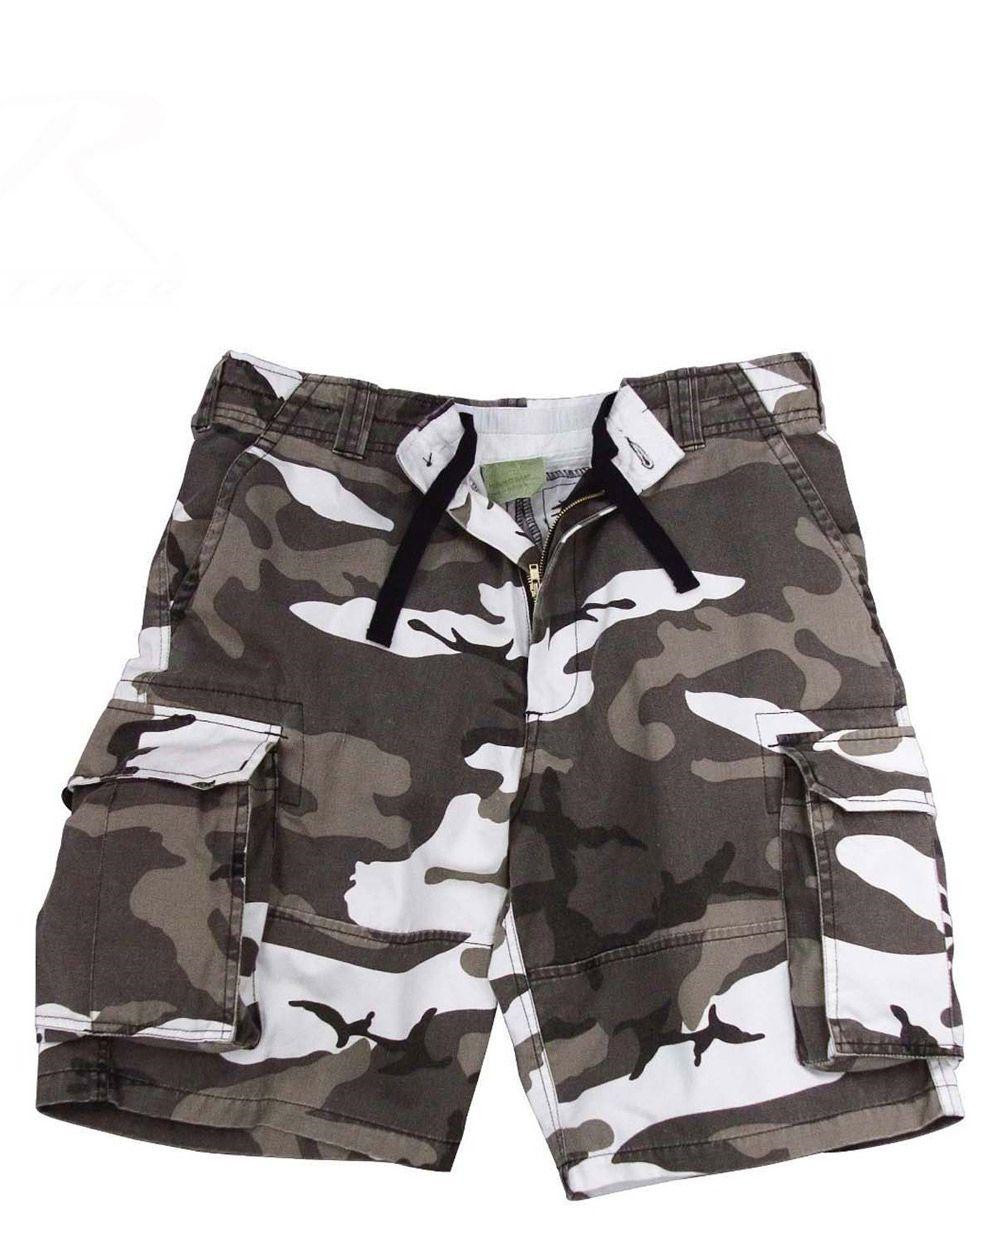 Rothco Cargo shorts (Urban Camo, XL)